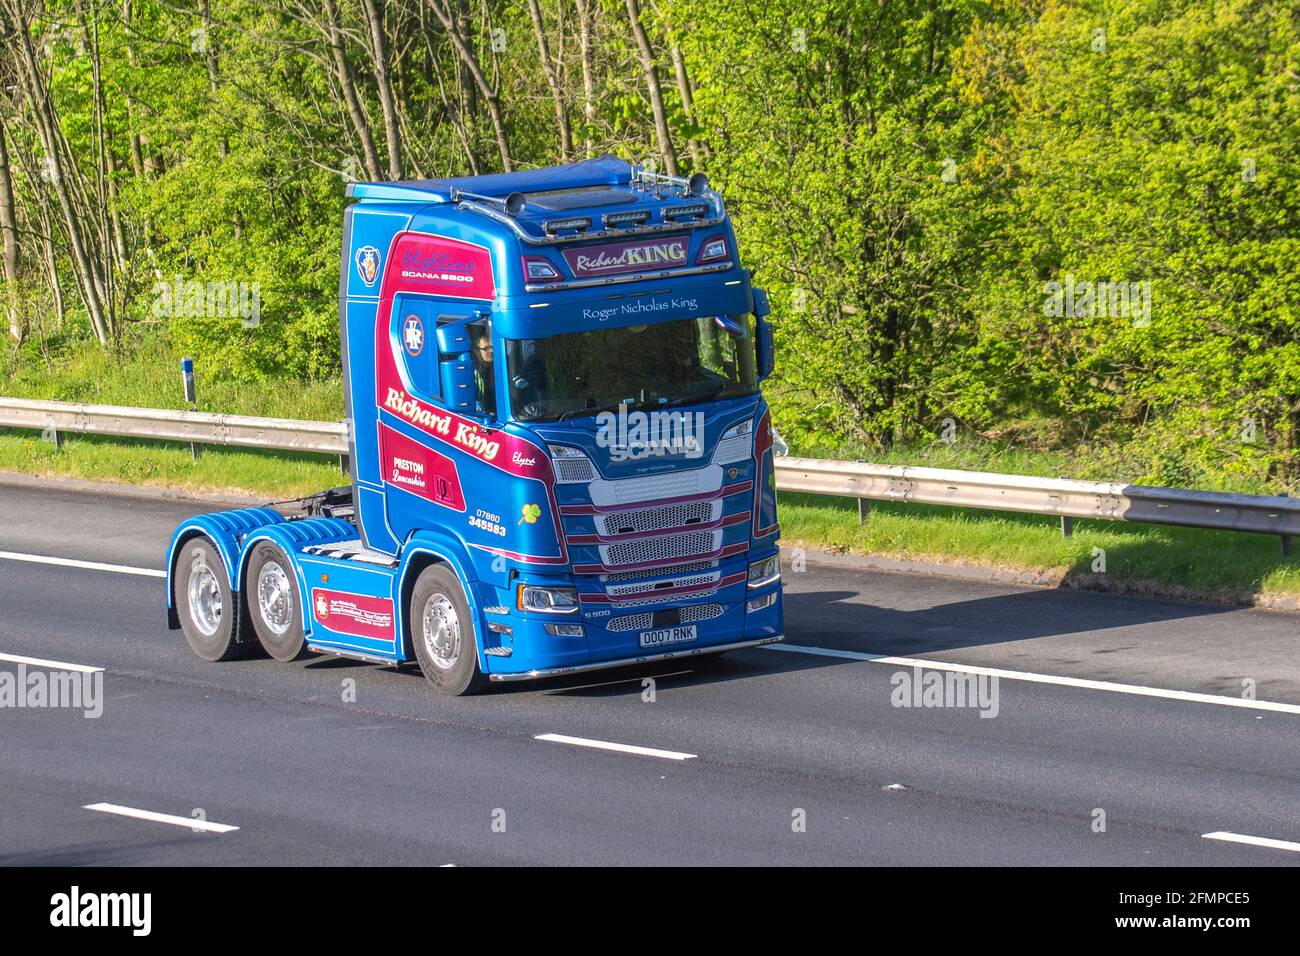 Richard King Haulage Ltd Cargo & Freight Company ; camions de livraison, camions, véhicules lourds, transport, camion, Porte-bagages, véhicule, industrie européenne du transport commercial HGV, M6 à Manchester, Royaume-Uni Banque D'Images